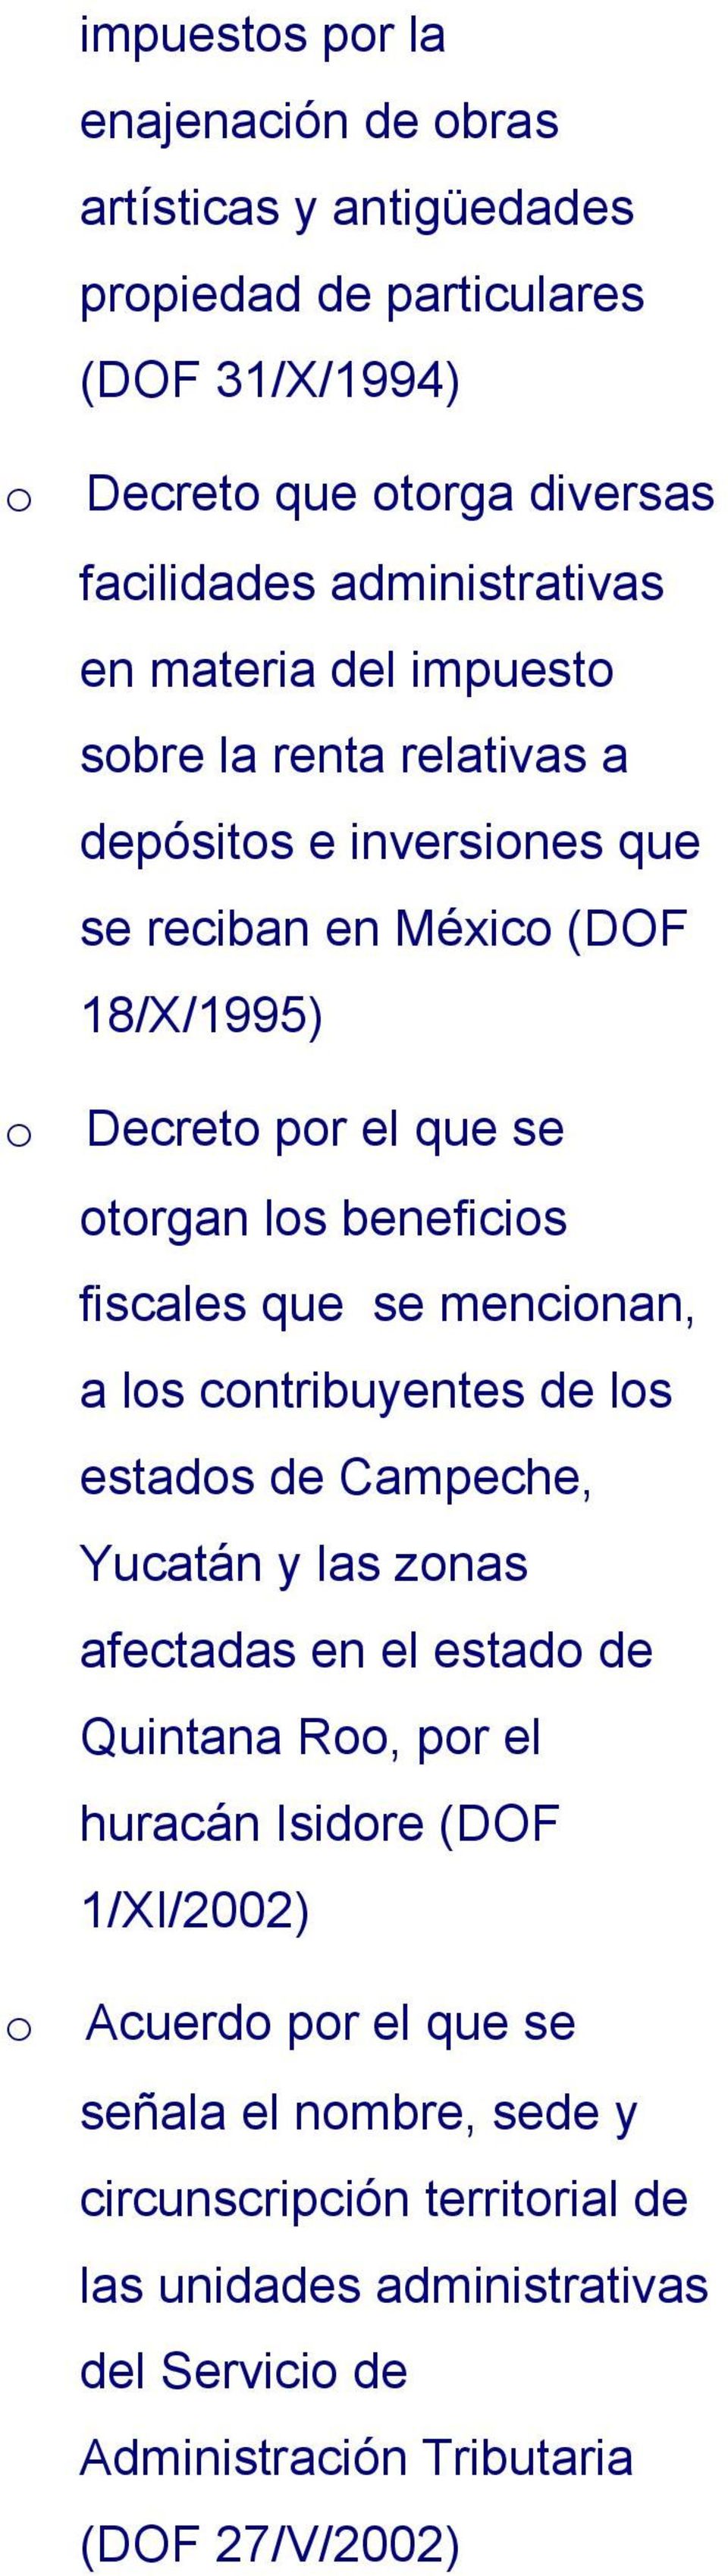 fiscales que se mencinan, a ls cntribuyentes de ls estads de Campeche, Yucatán y las znas afectadas en el estad de Quintana R, pr el huracán Isidre (DOF